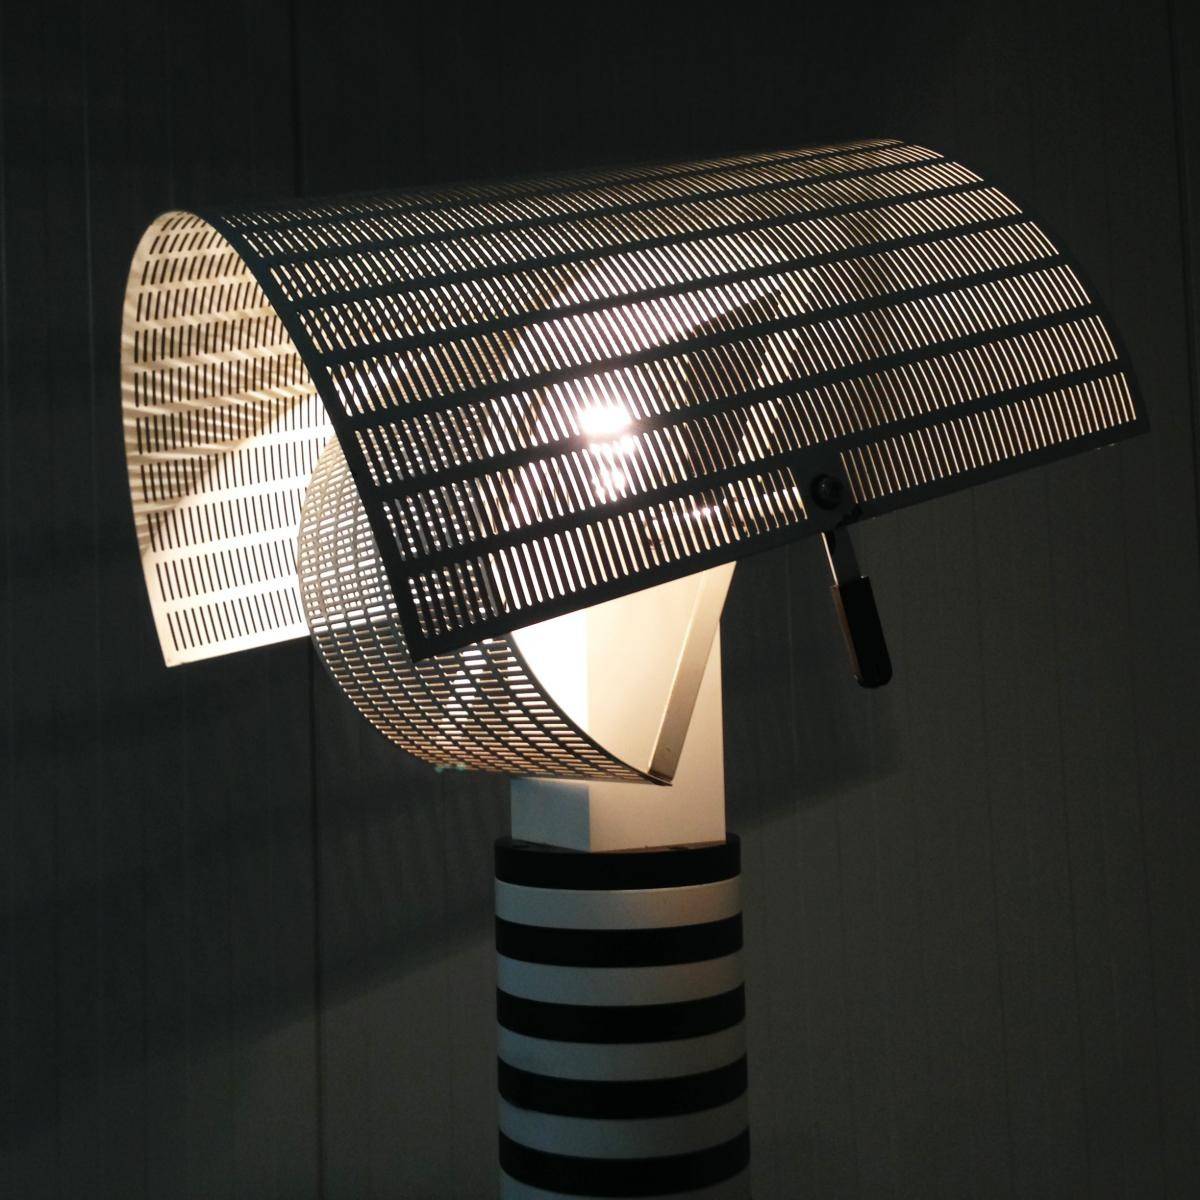 Lampe de table Shogun pour Artemide à Marseille chez issima